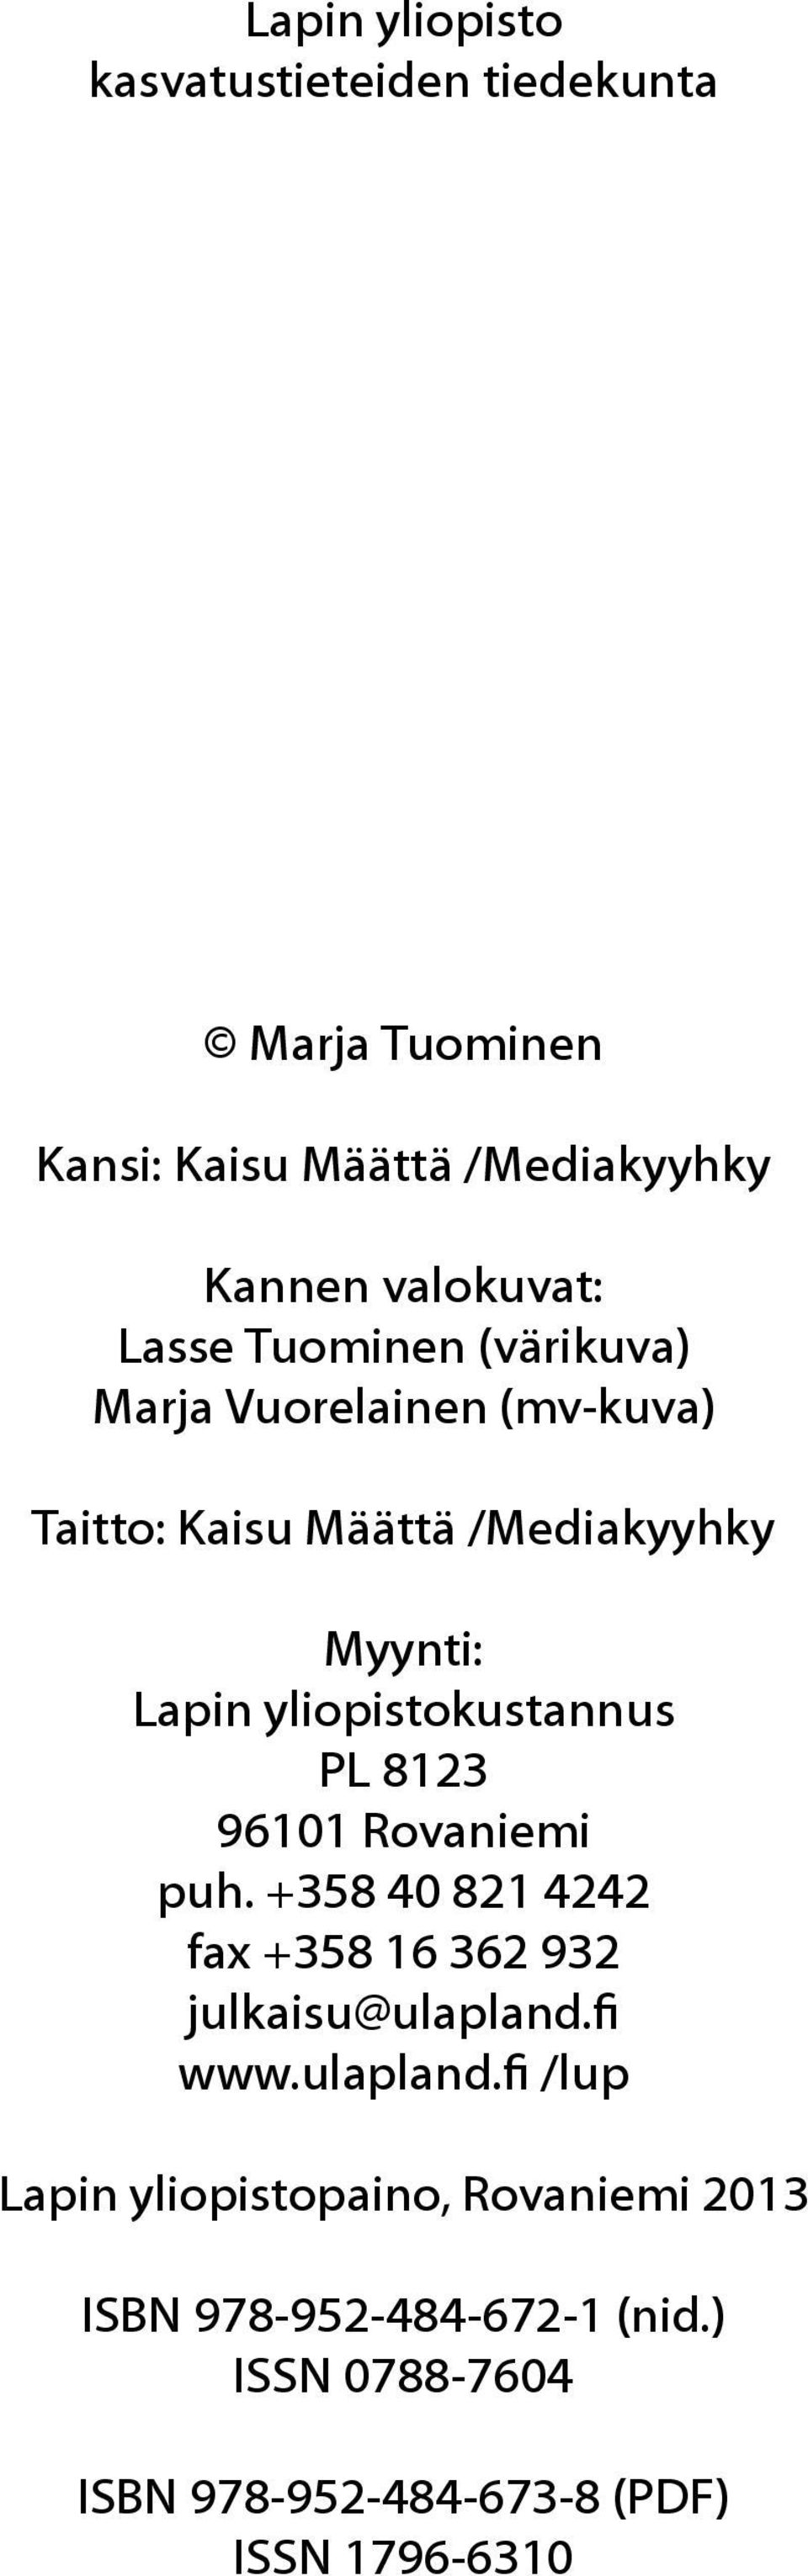 PL 8123 96101 Rovaniemi puh. +358 40 821 4242 fax +358 16 362 932 julkaisu@ulapland.